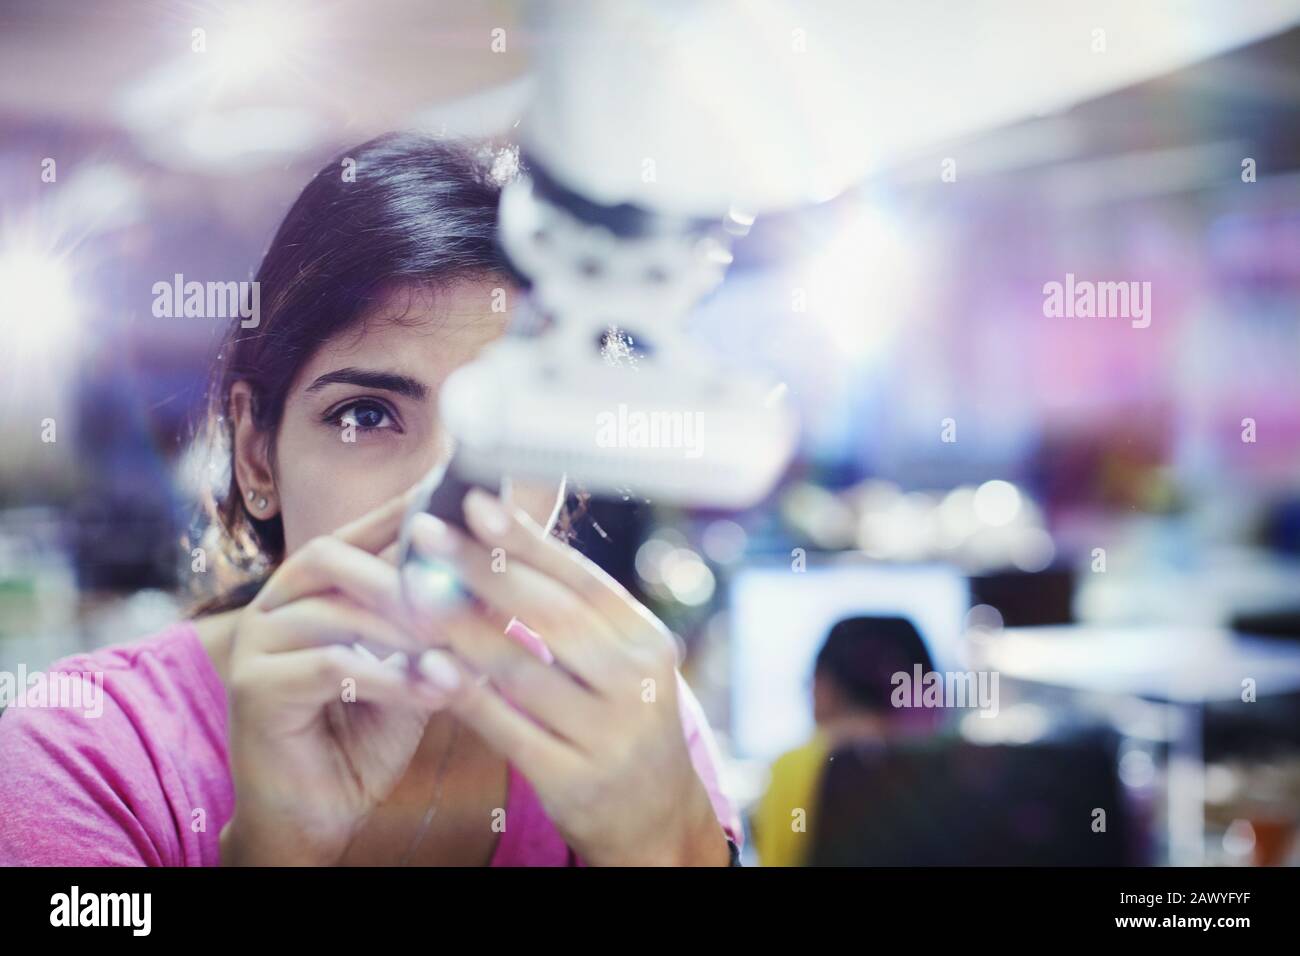 Focused female engineer repairing robotic arm Stock Photo